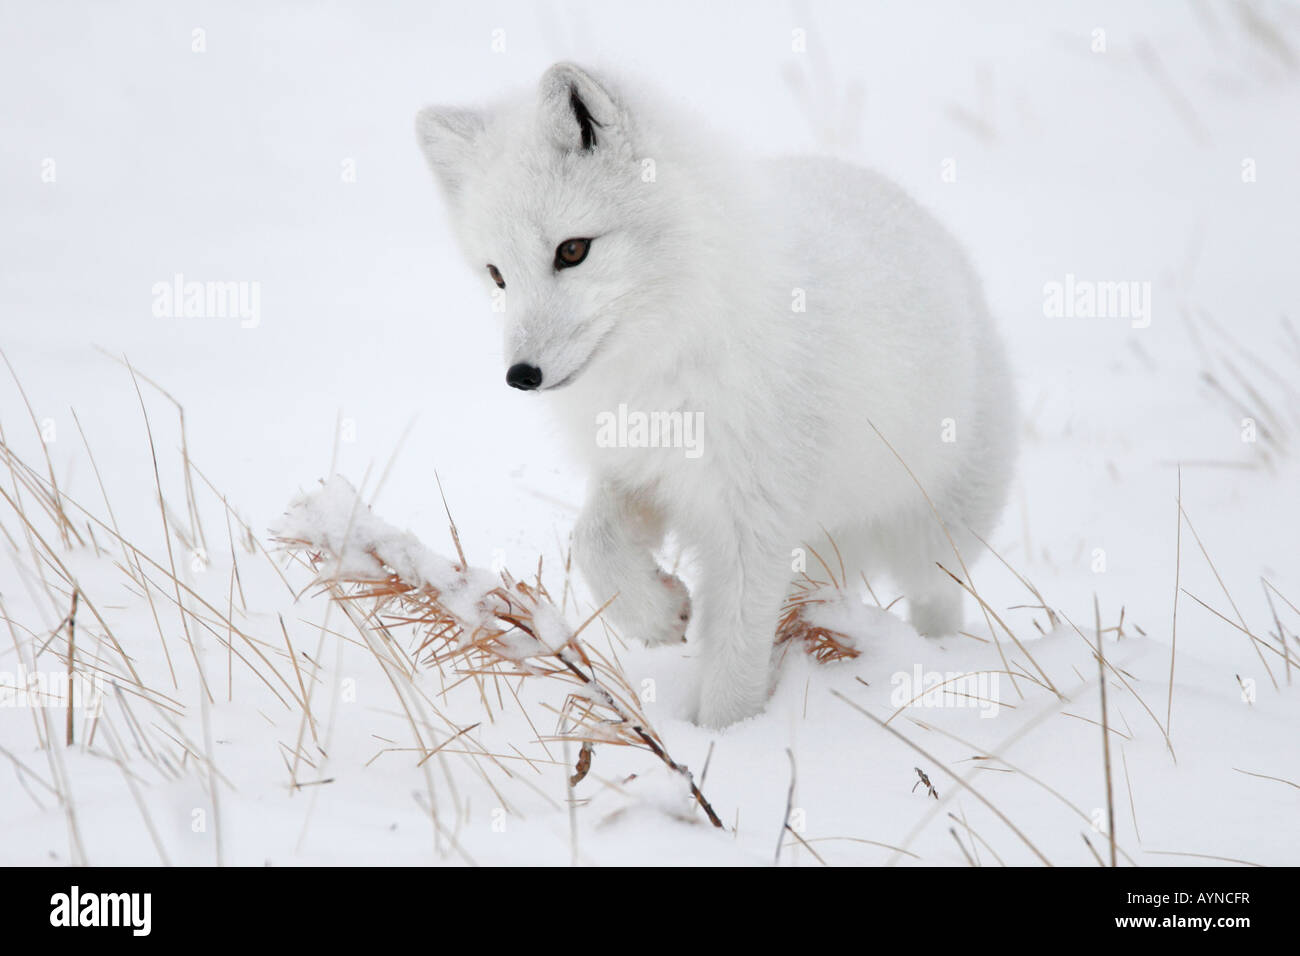 Une alerte sur le prowl renard arctique chasse les lemmings dans la neige sur la toundra arctique pendant l'hiver à Churchill, au Manitoba, au Québec. Banque D'Images